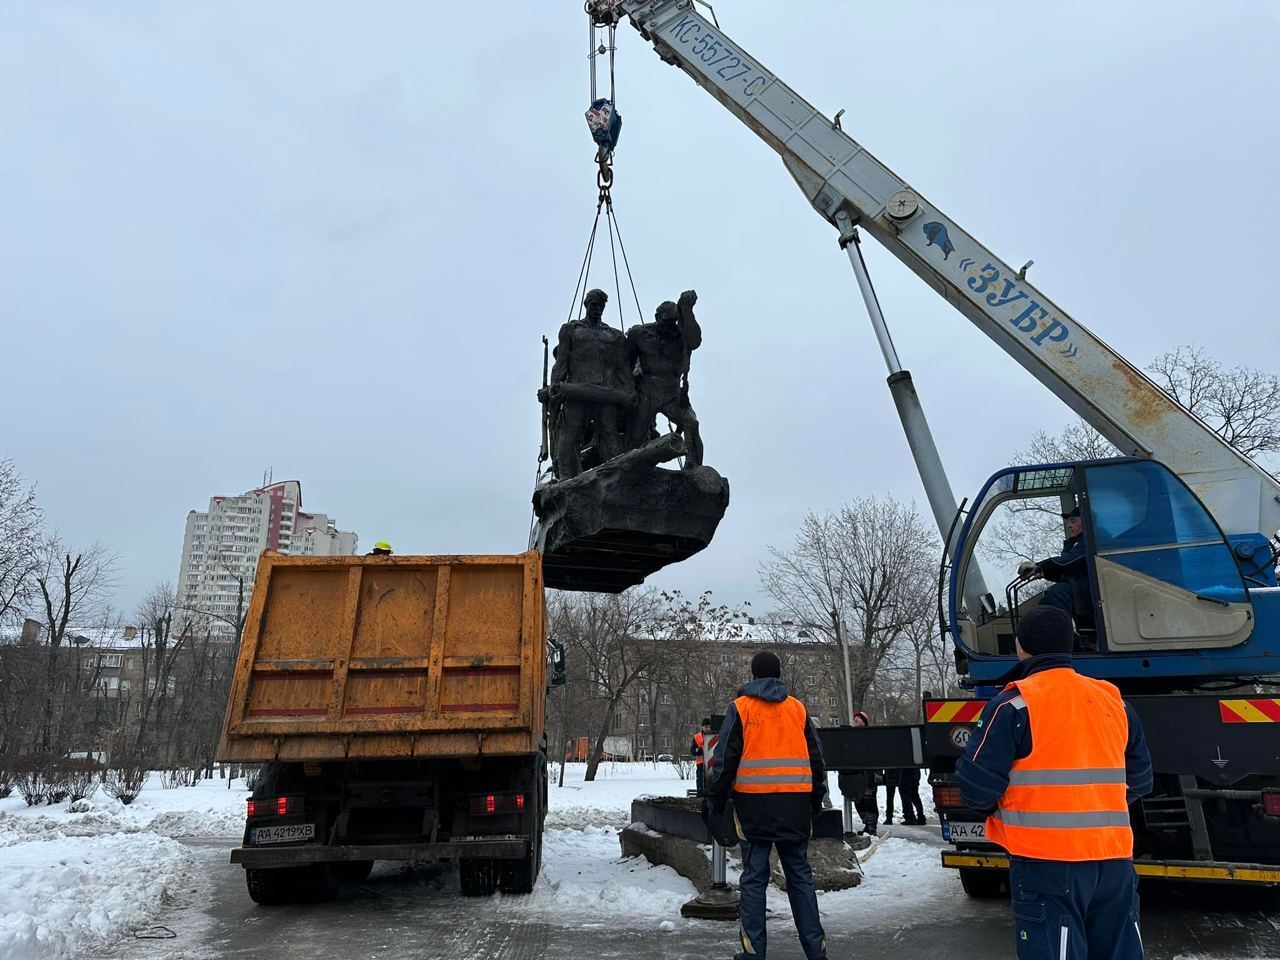 В Киеве на Дарнице был демонтирован памятник экипажу советского бронепоезда "Таращанец". Фото и видео